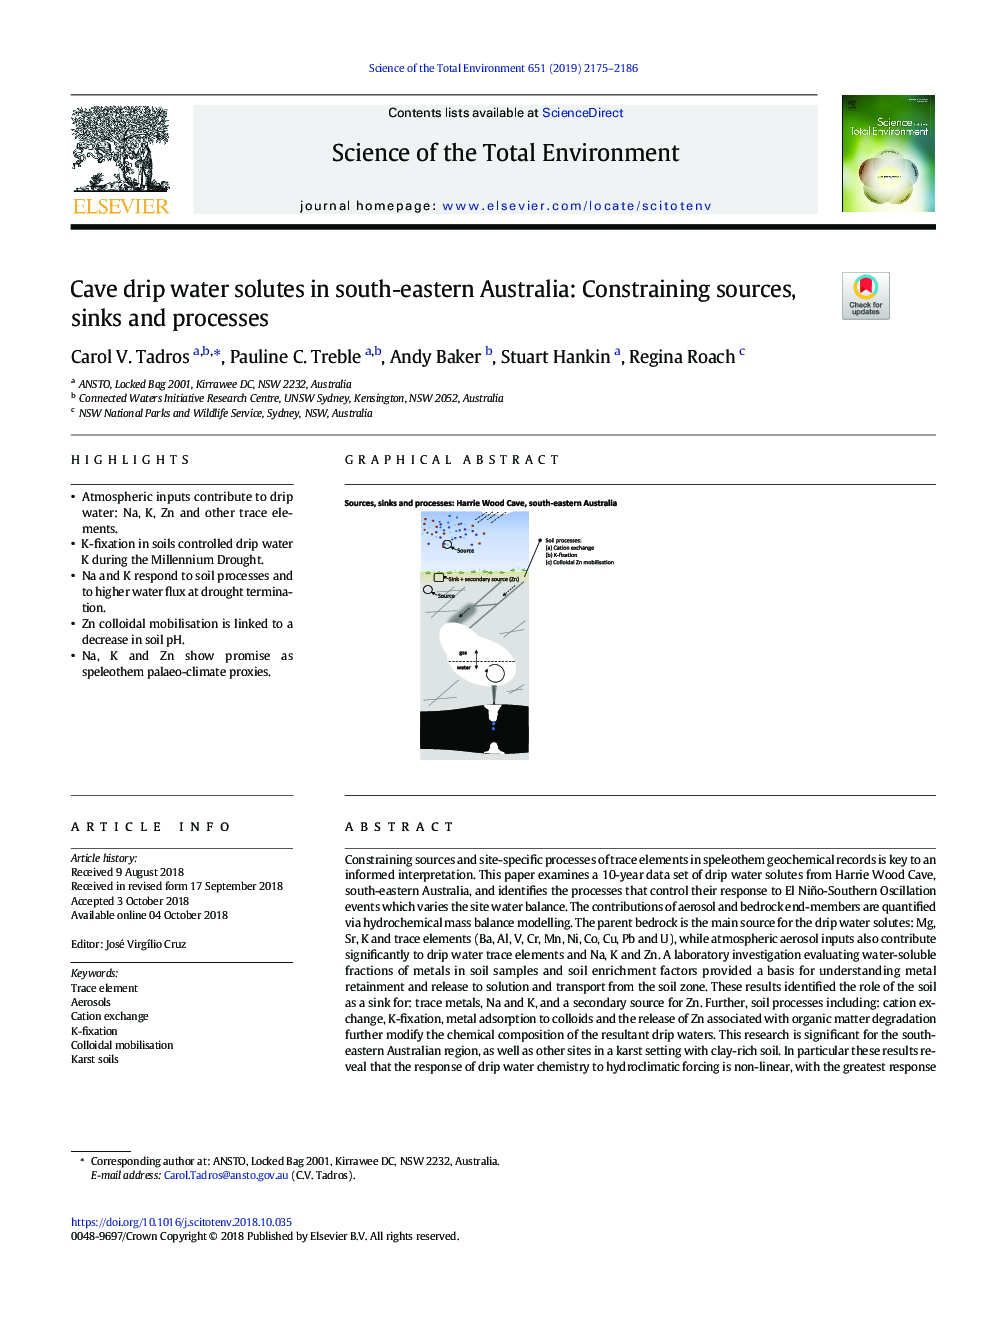 حلال آب غار در جنوب شرقی استرالیا: محدود کردن منابع، غرقاب و فرایندها